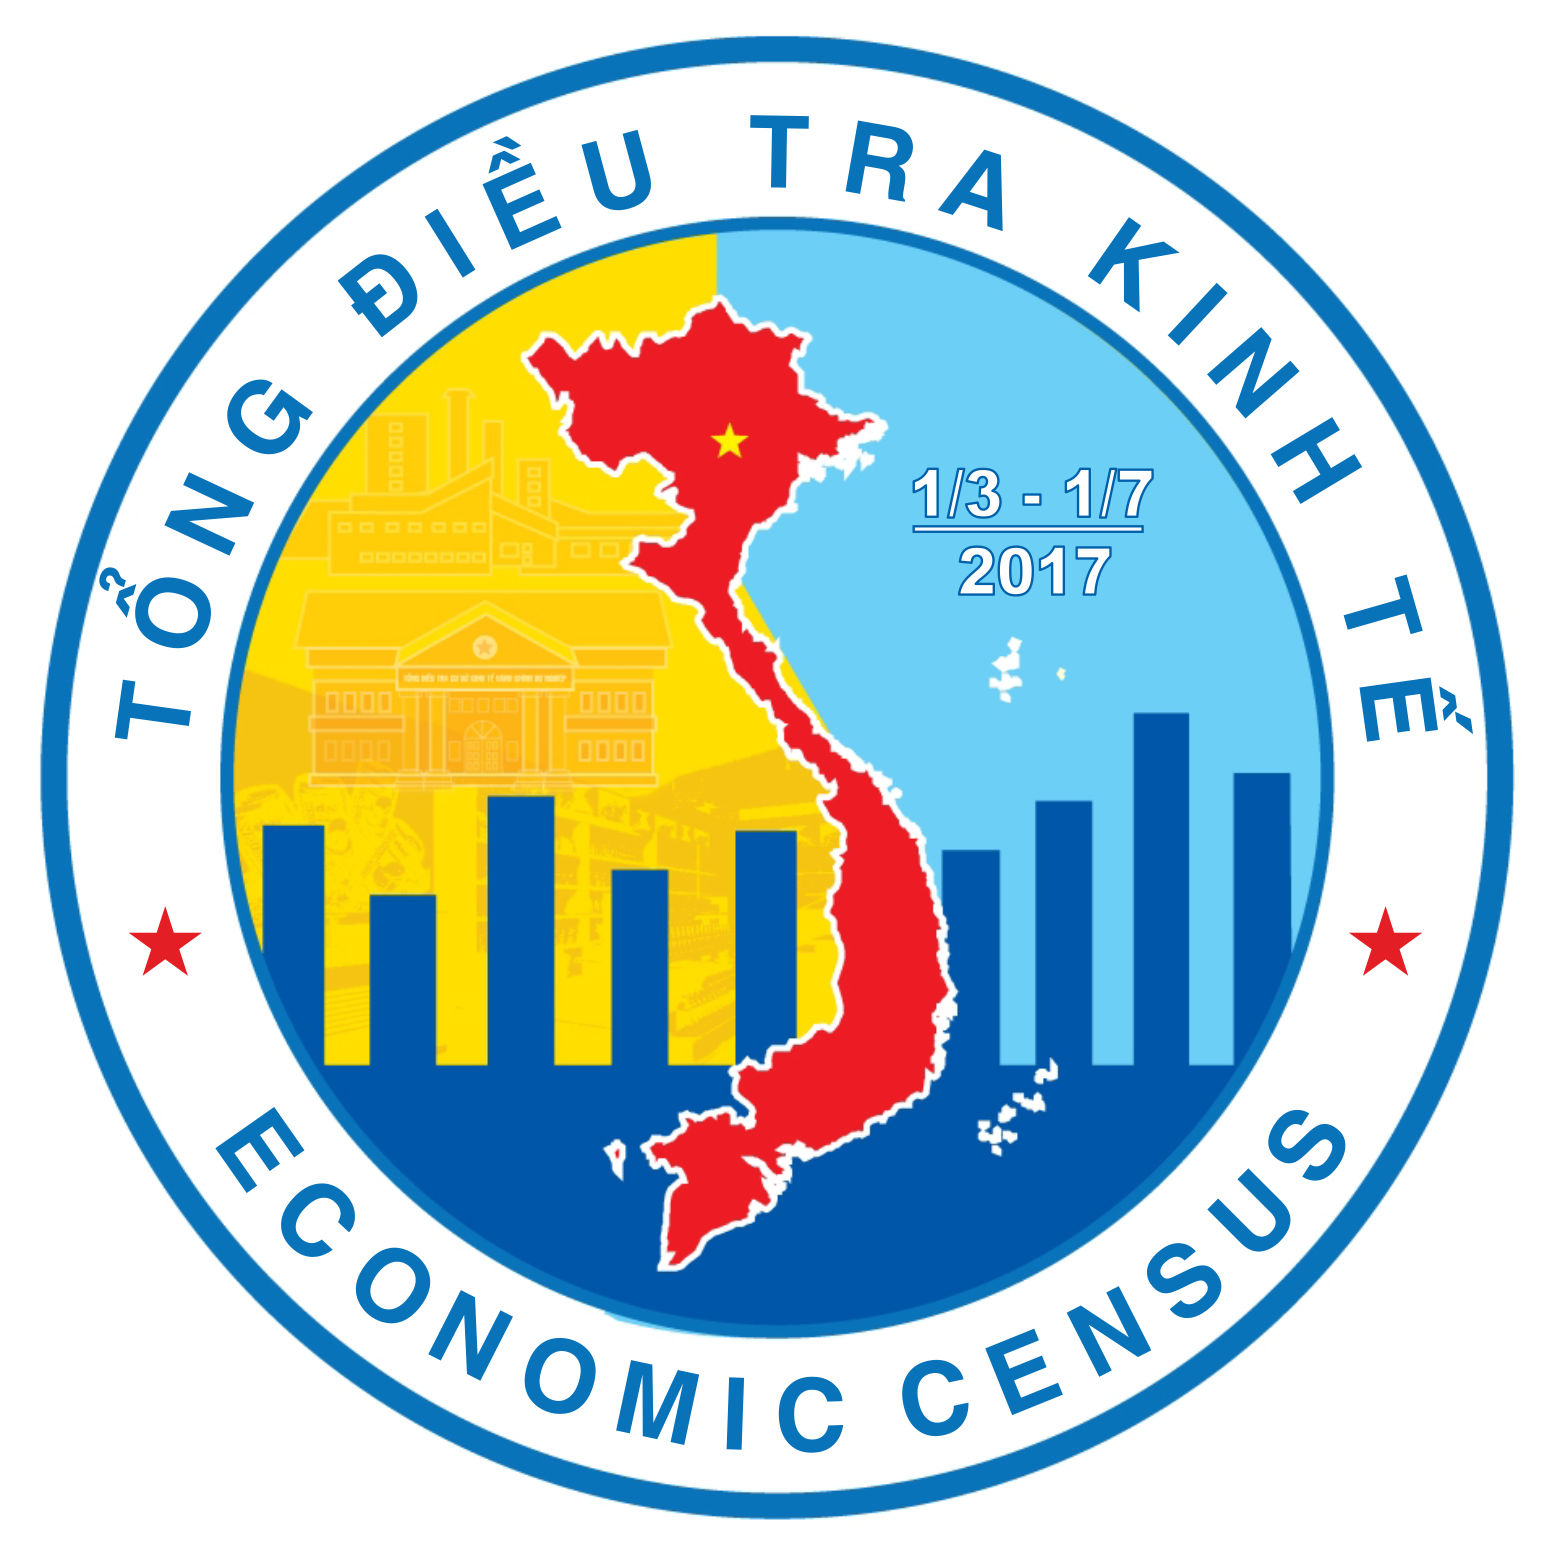 Huyện Bù Gia Mập triển khai công tác Tổng điều tra kinh tế năm 2017